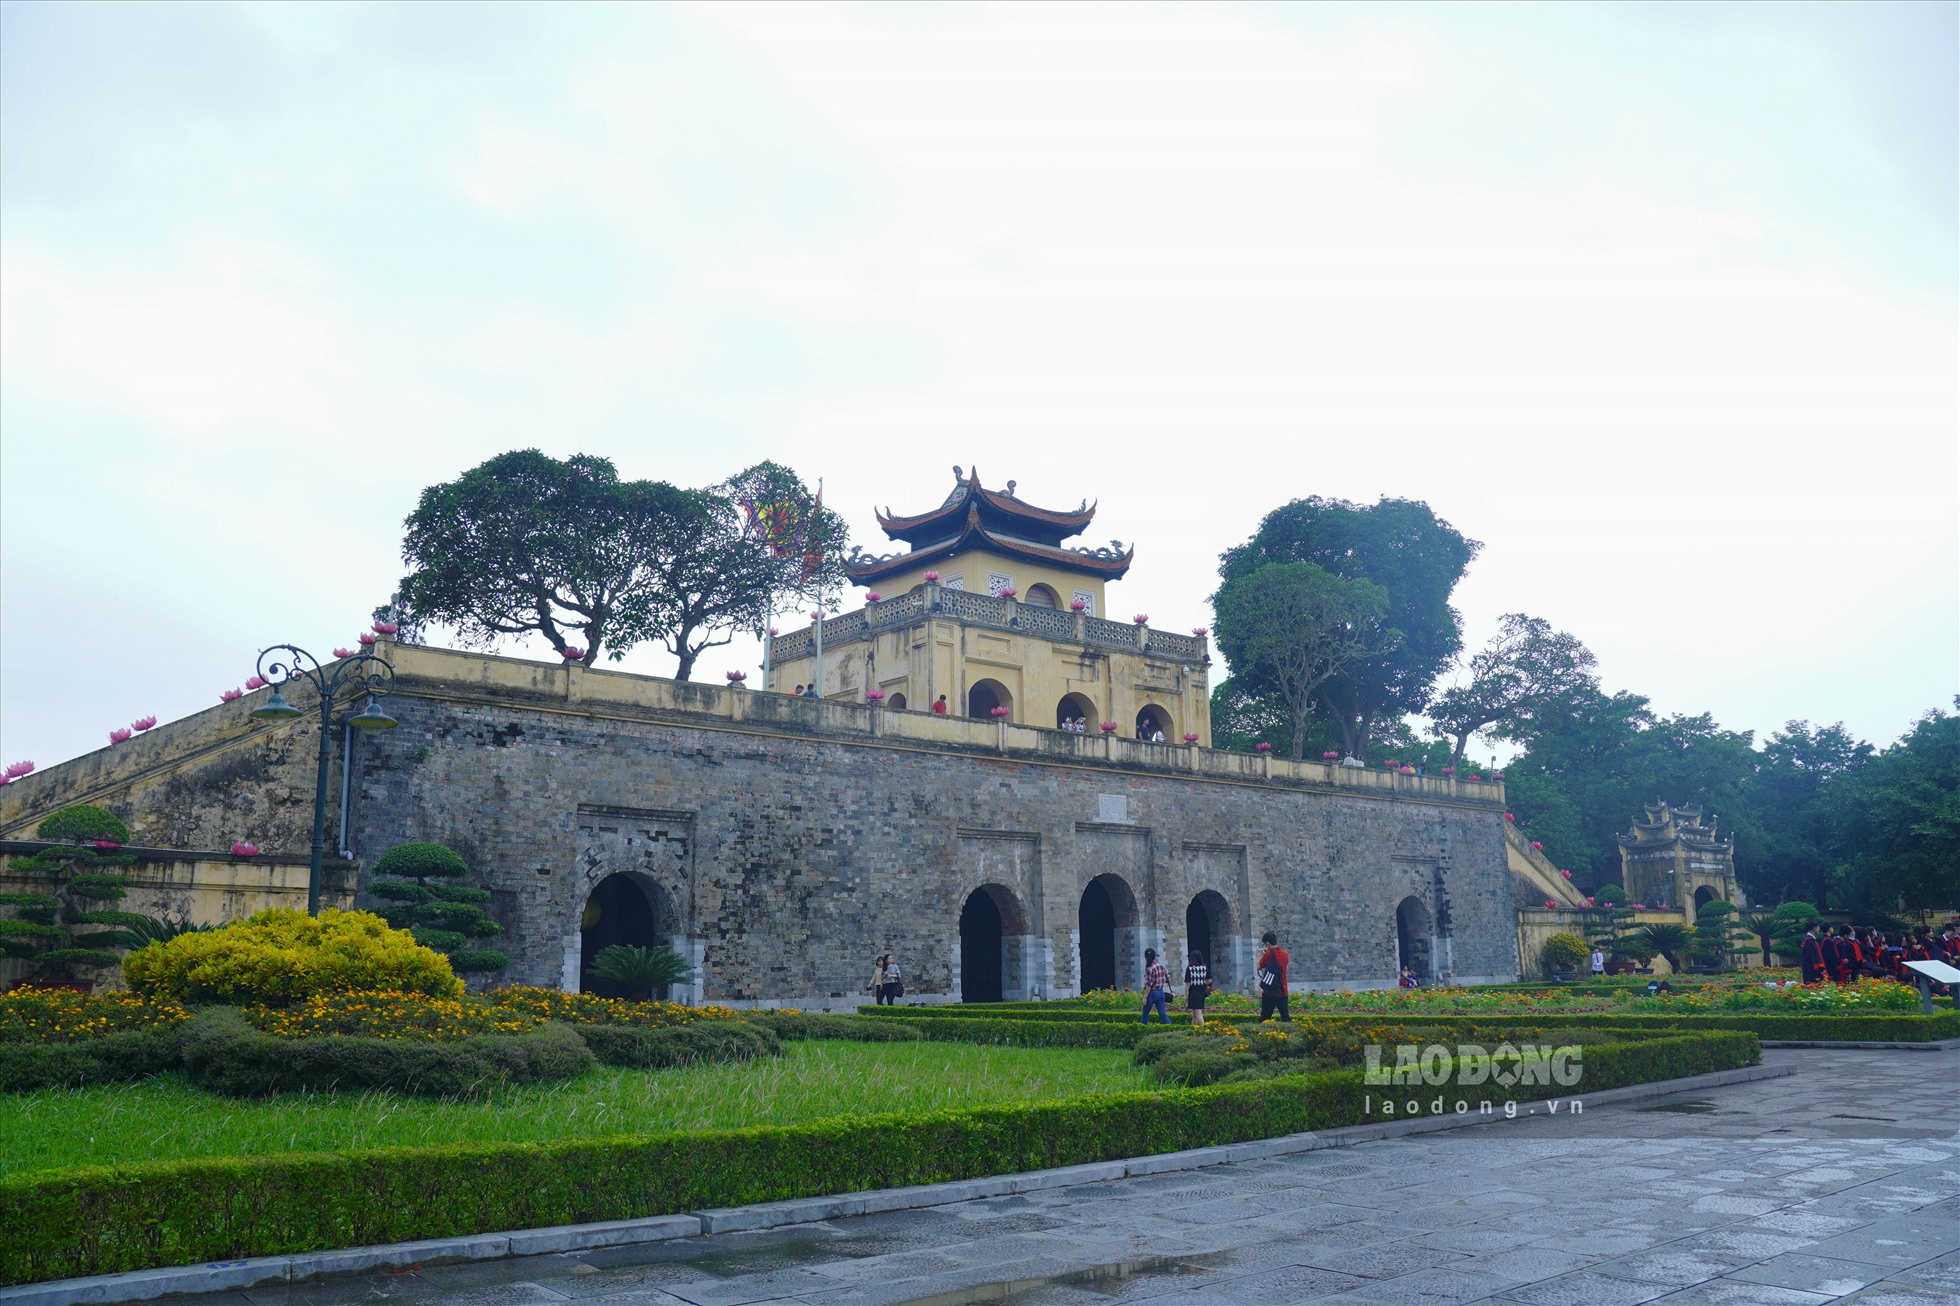 Khu Thành cổ (Hoàng Thành Thăng Long) là nơi hội quân của 3 cánh quân Đại đoàn 308 vào tiếp quản Thủ đô sáng 10.10.1954.